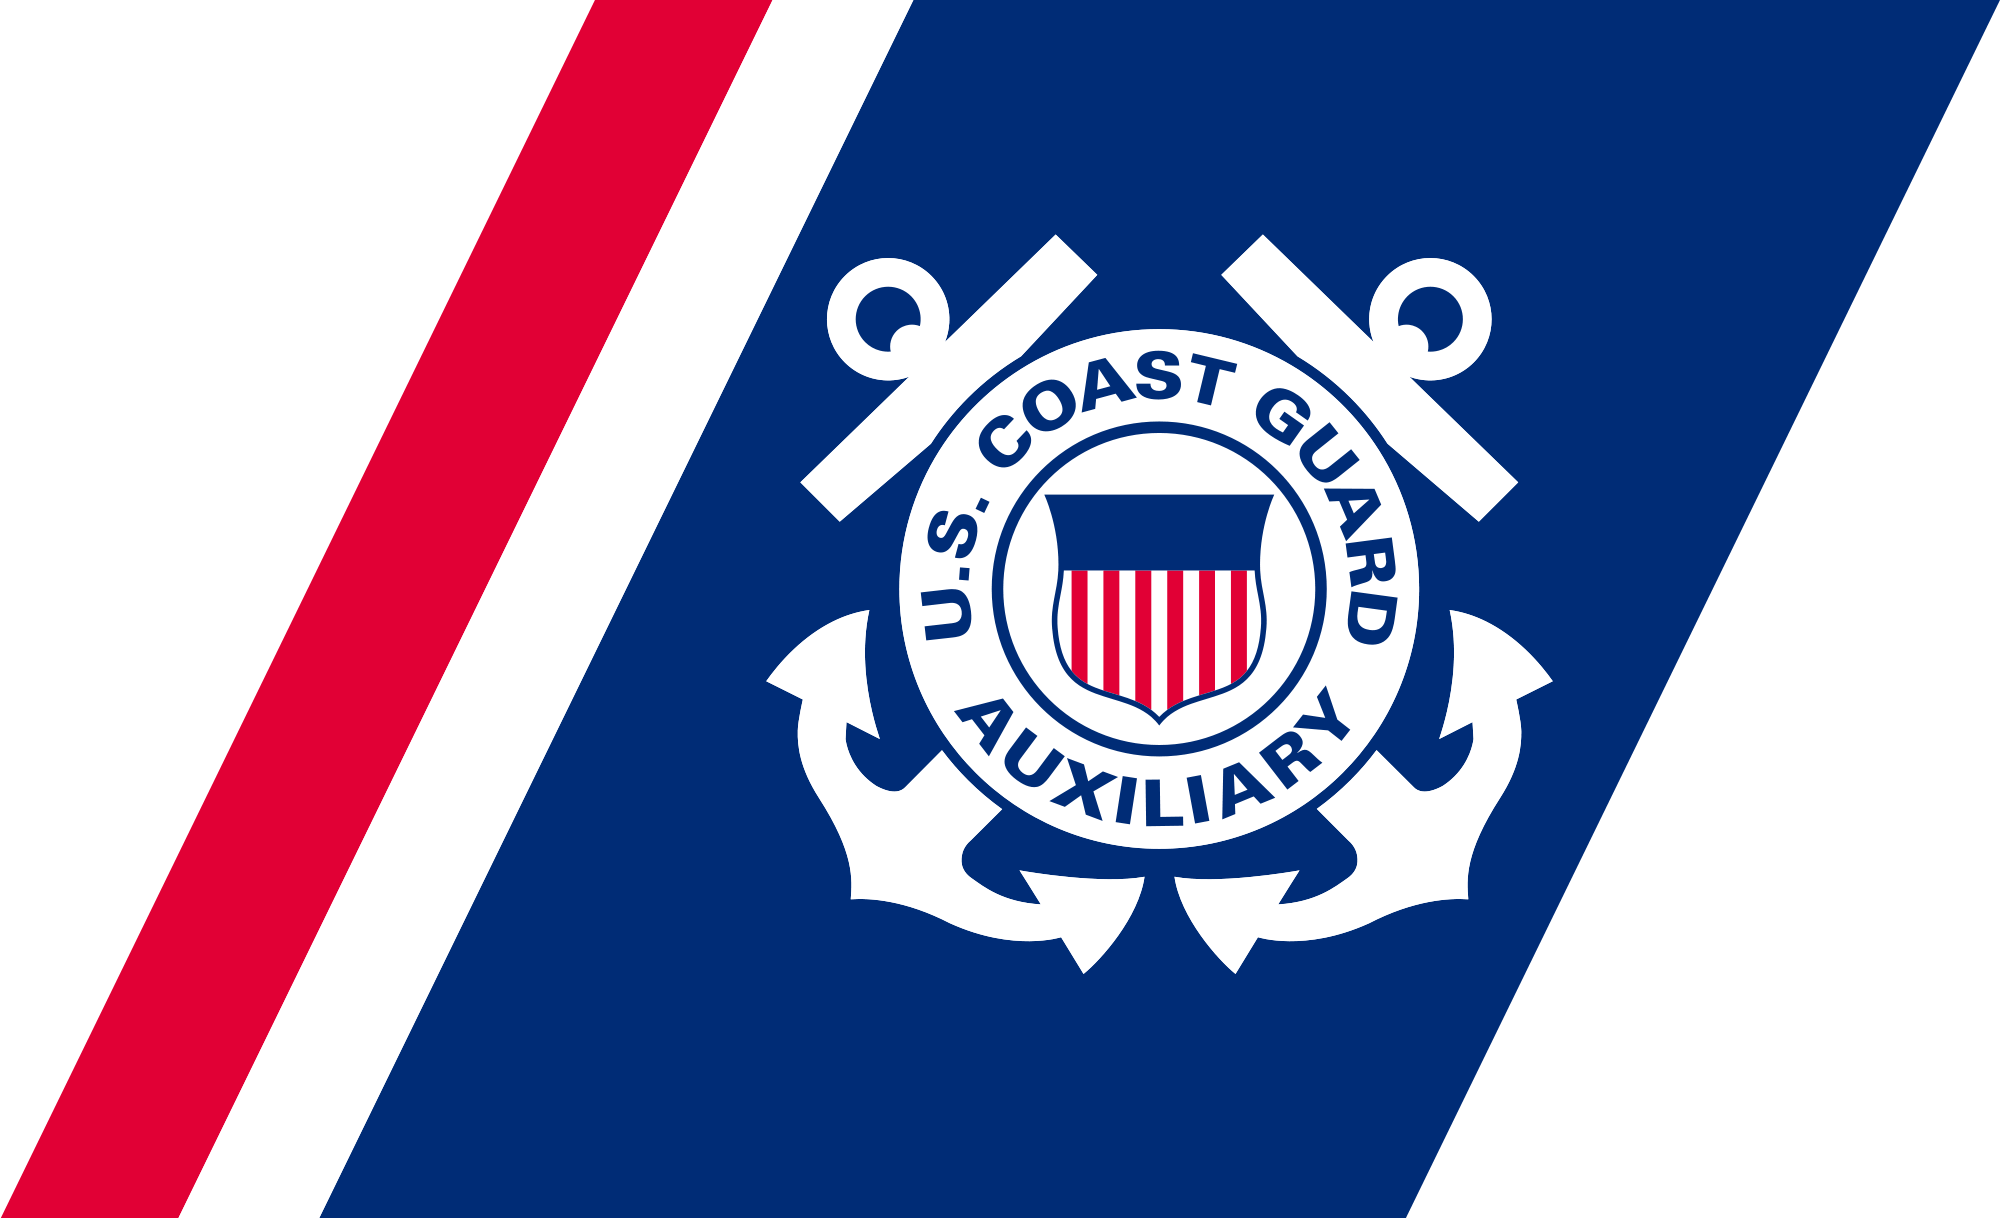 Us Coast Guard Logo - File:U.S. Coast Guard Auxiliary Mark.svg - Wikimedia Commons